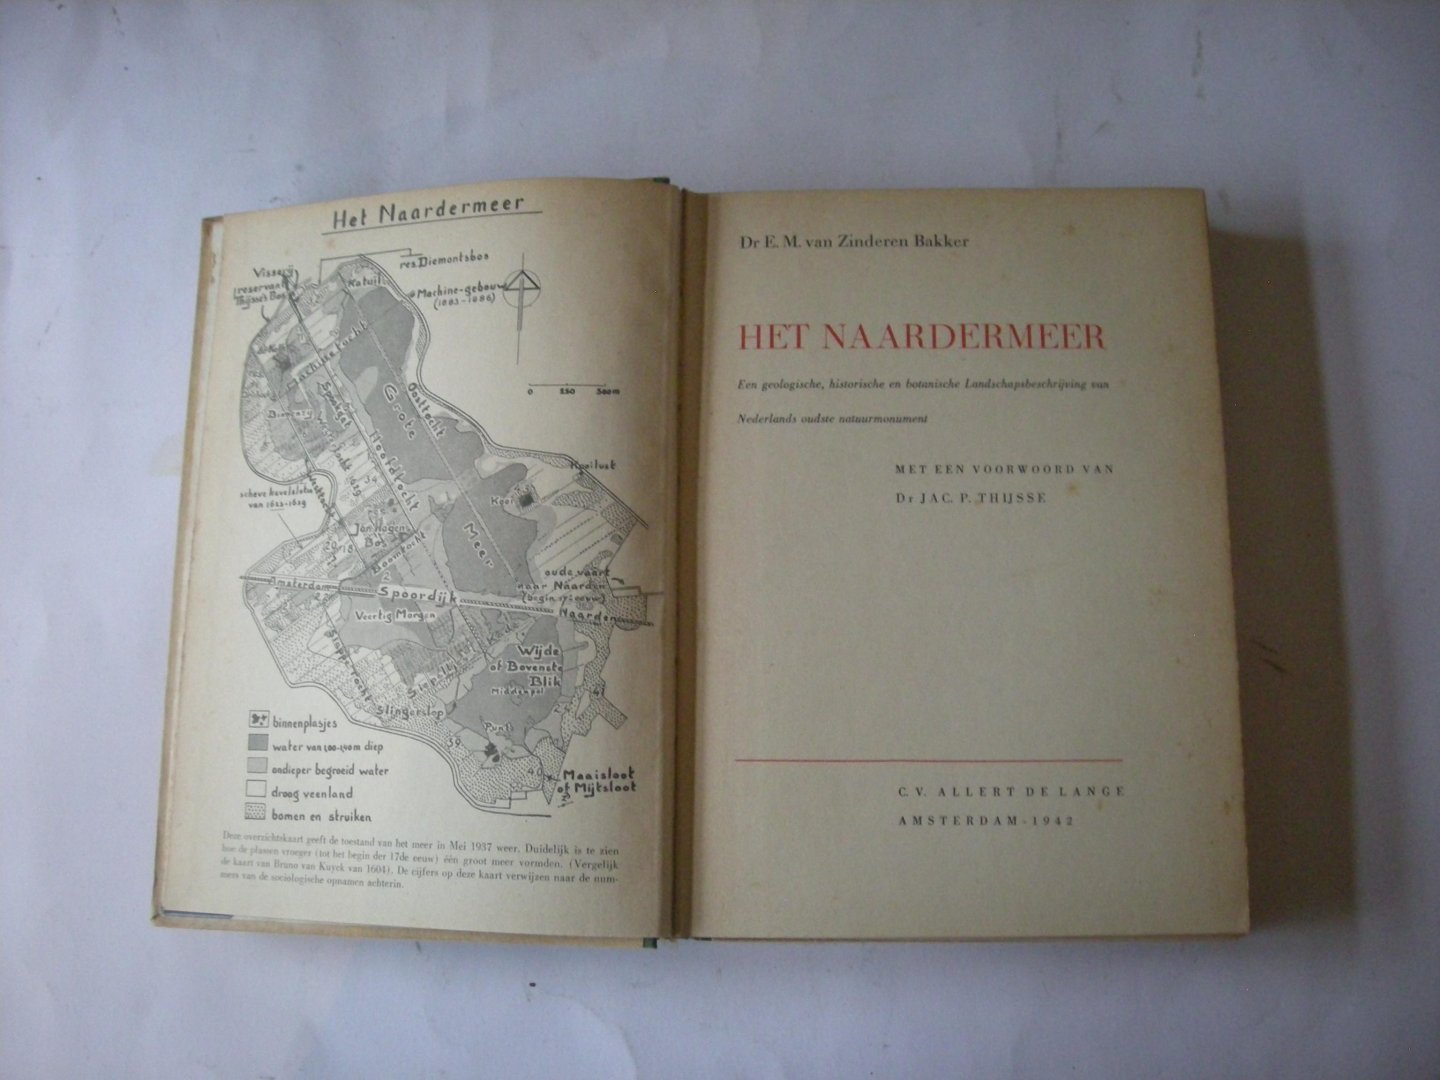 Zinderen-Bakker, Dr E.M. van / Thijsse, Dr Jac.P. voorwoord - Het Naardermeer. Een geologische, historische en botanische Landschapsbeschrijving van Nederlands oudste natuurmonument